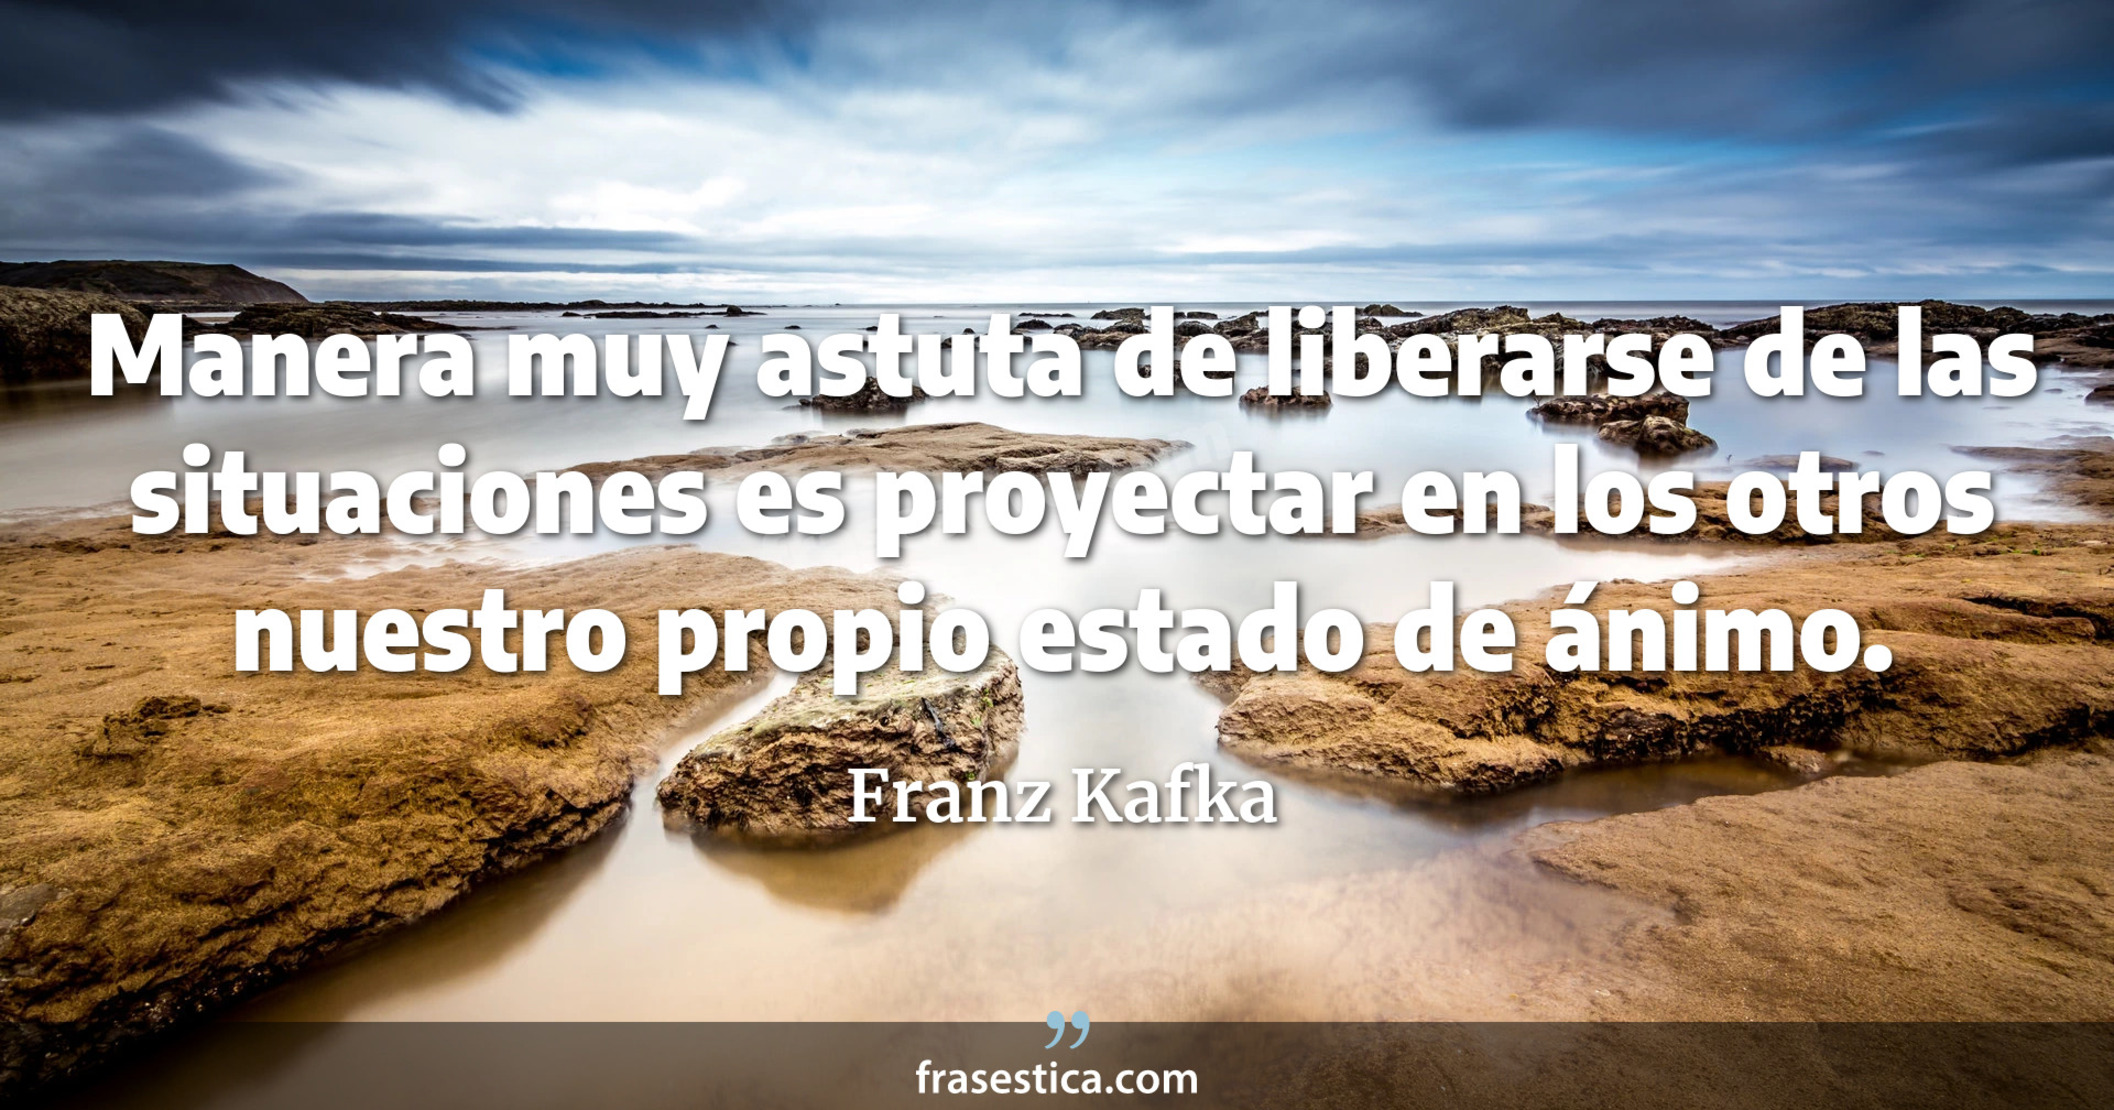 Manera muy astuta de liberarse de las situaciones es proyectar en los otros nuestro propio estado de ánimo. - Franz Kafka